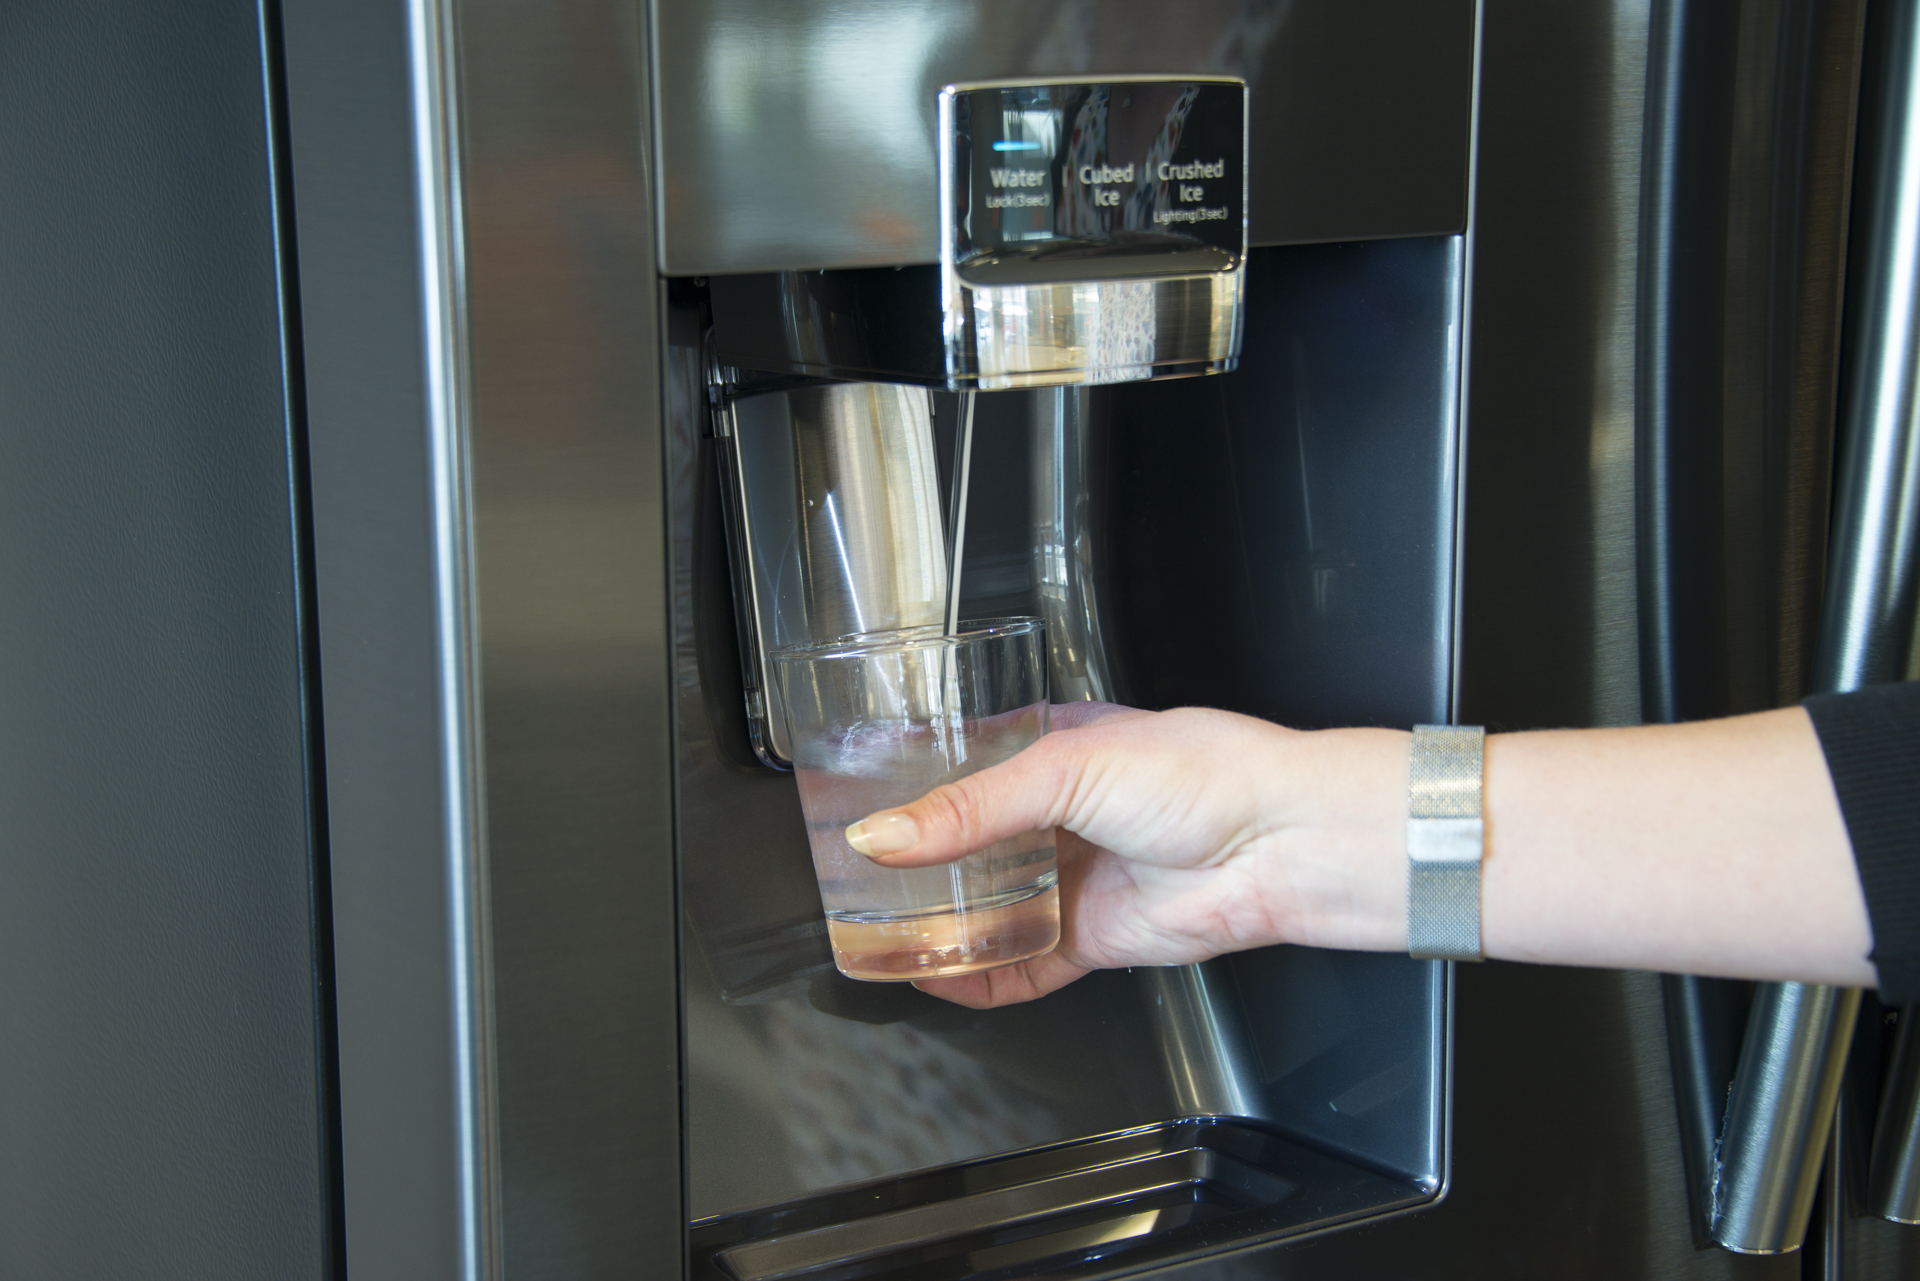 Samsung Family Hub Refrigerator review: Finally, a smart fridge